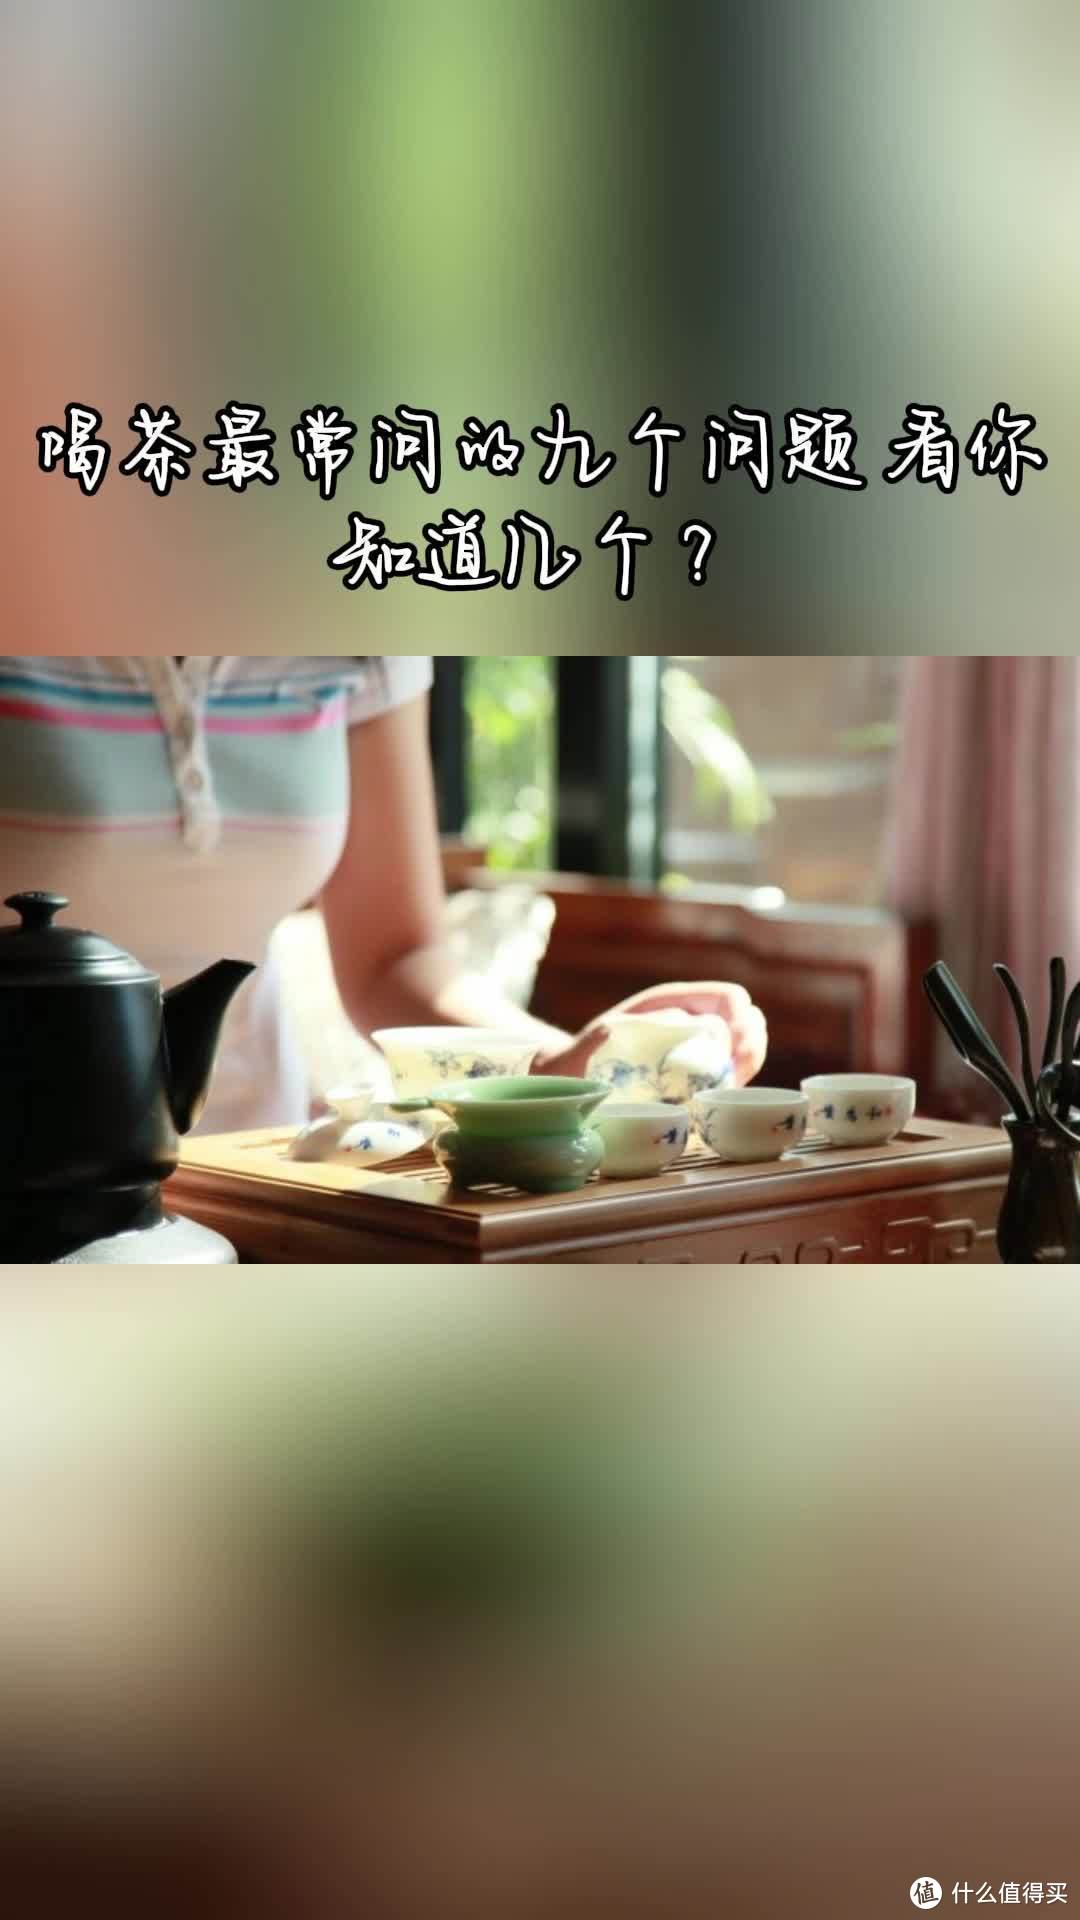 四川茶博会 喝茶常问的九个问题 老茶友您知道吗？